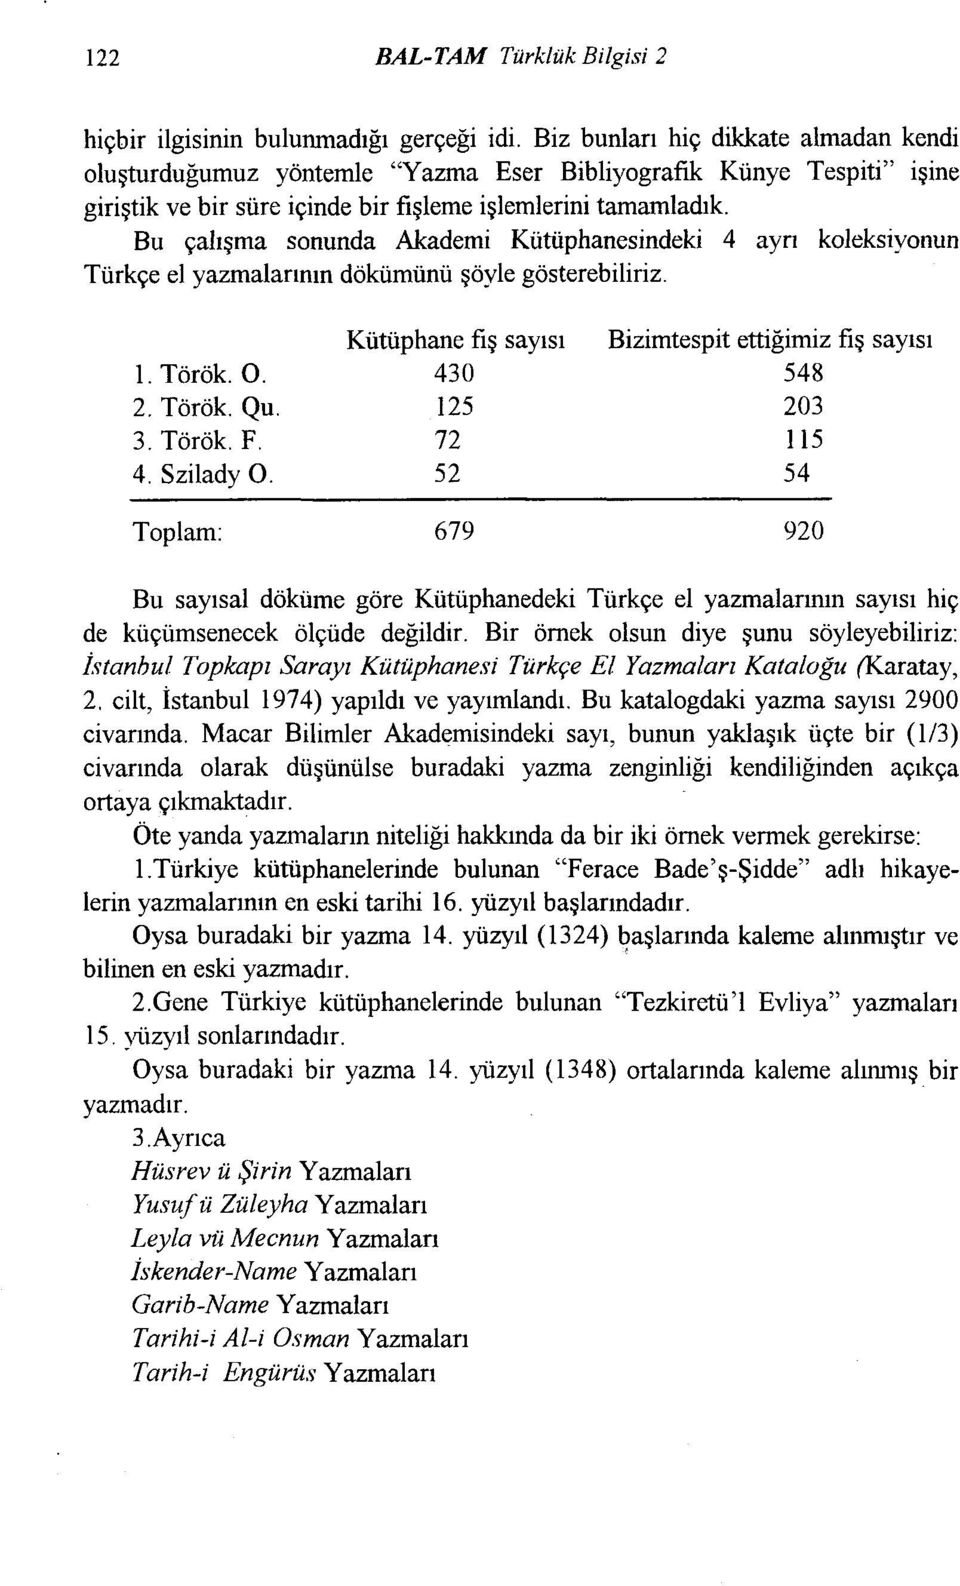 Bu çalışma sonunda Akademi Kütüphanesindeki 4 ayrı koleksiyonun Türkçe el yazmalarının dökümünü şöyle gösterebiliriz. 1. Török. O. 2. Török. Qu. 3. Török. F. 4. Szilady O.